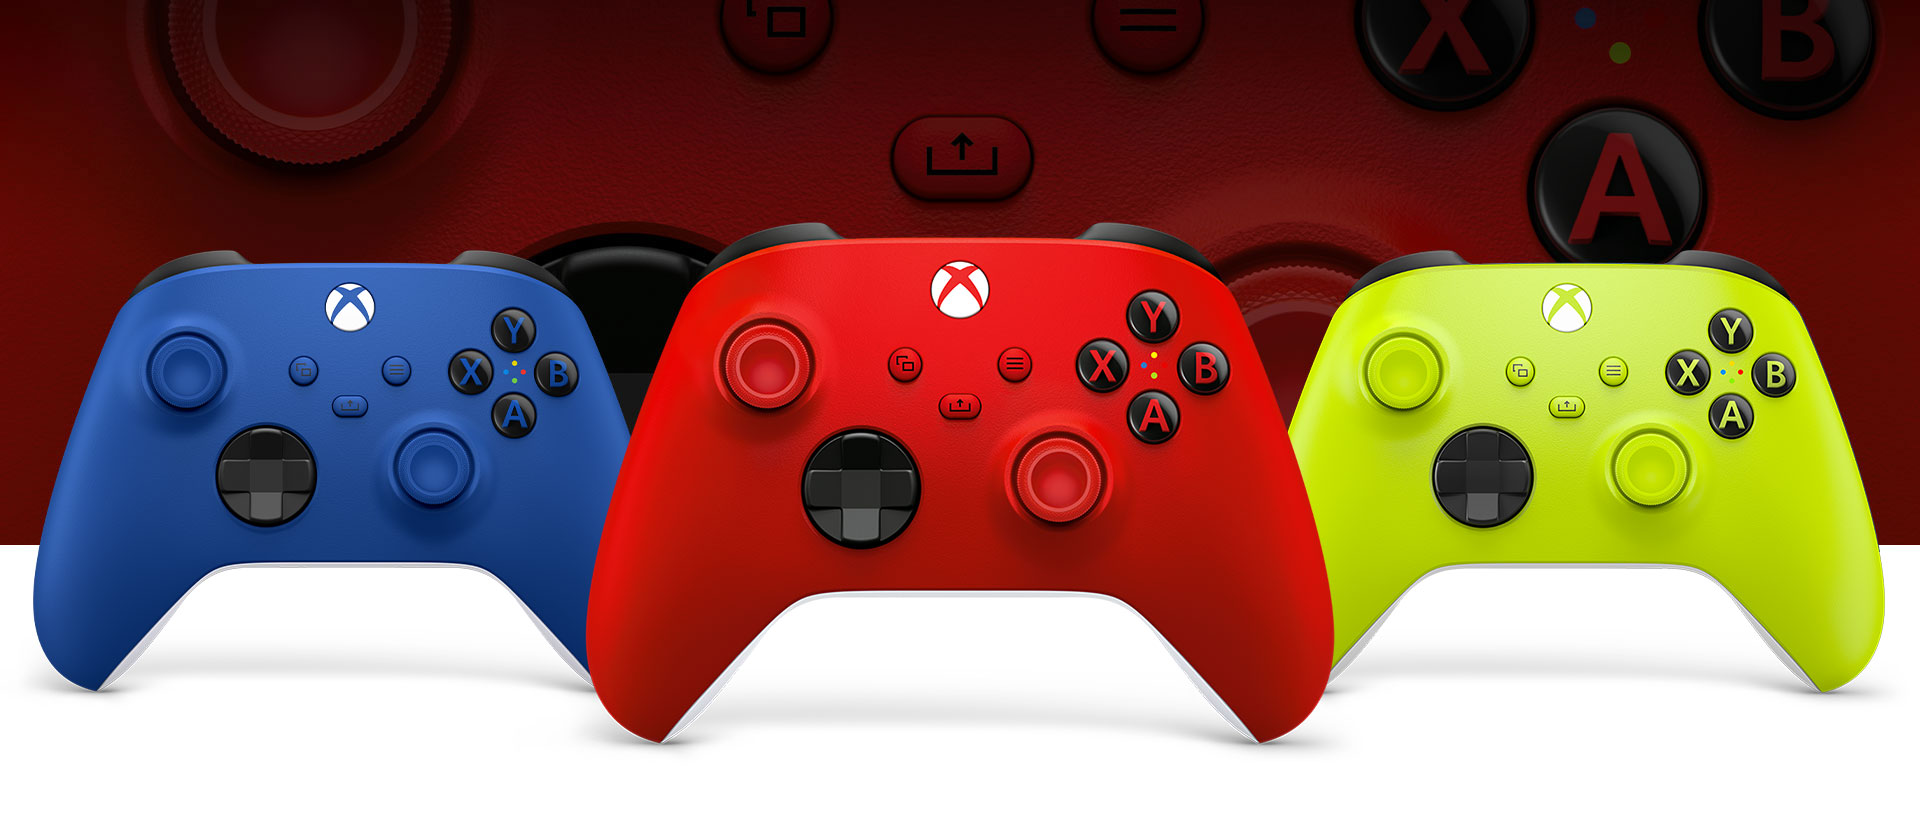 Soldaki Shock Blue ve sağdaki Electric Volt oyun kumandalarının önünde ortada duran Xbox Pulse Red oyun kumandası